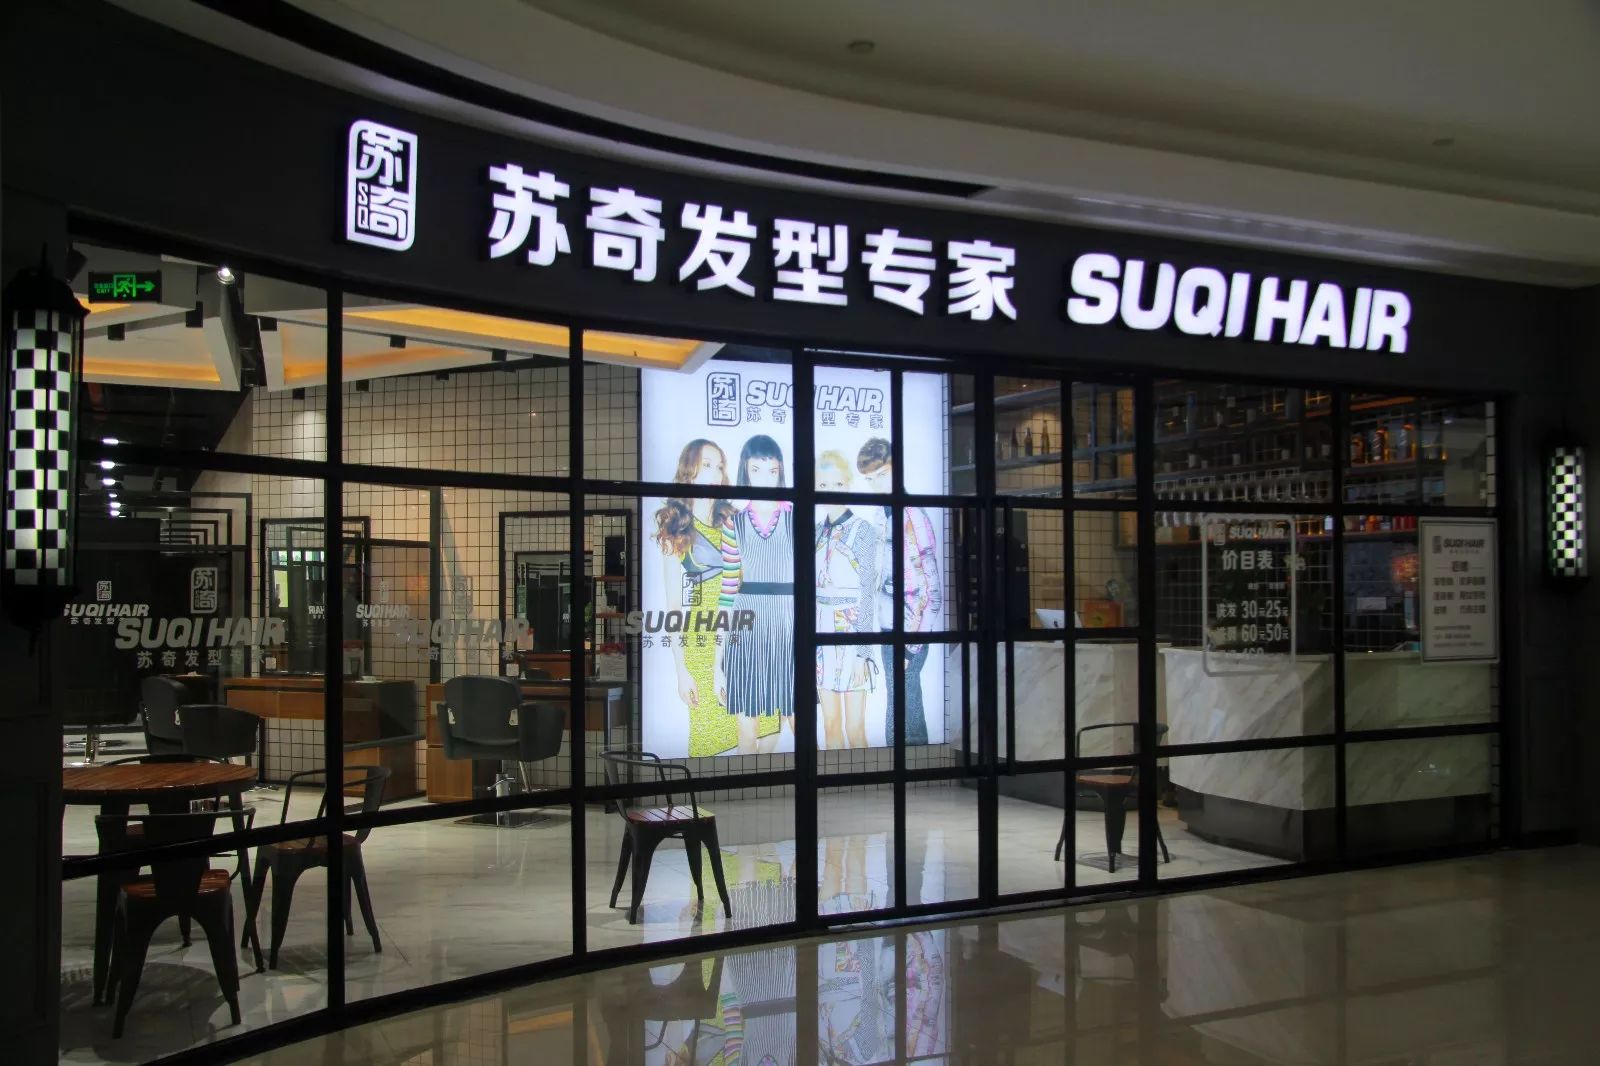 苏奇发型专家关注公众号随时了解苏奇的最新资讯苏奇海港店地址:中山